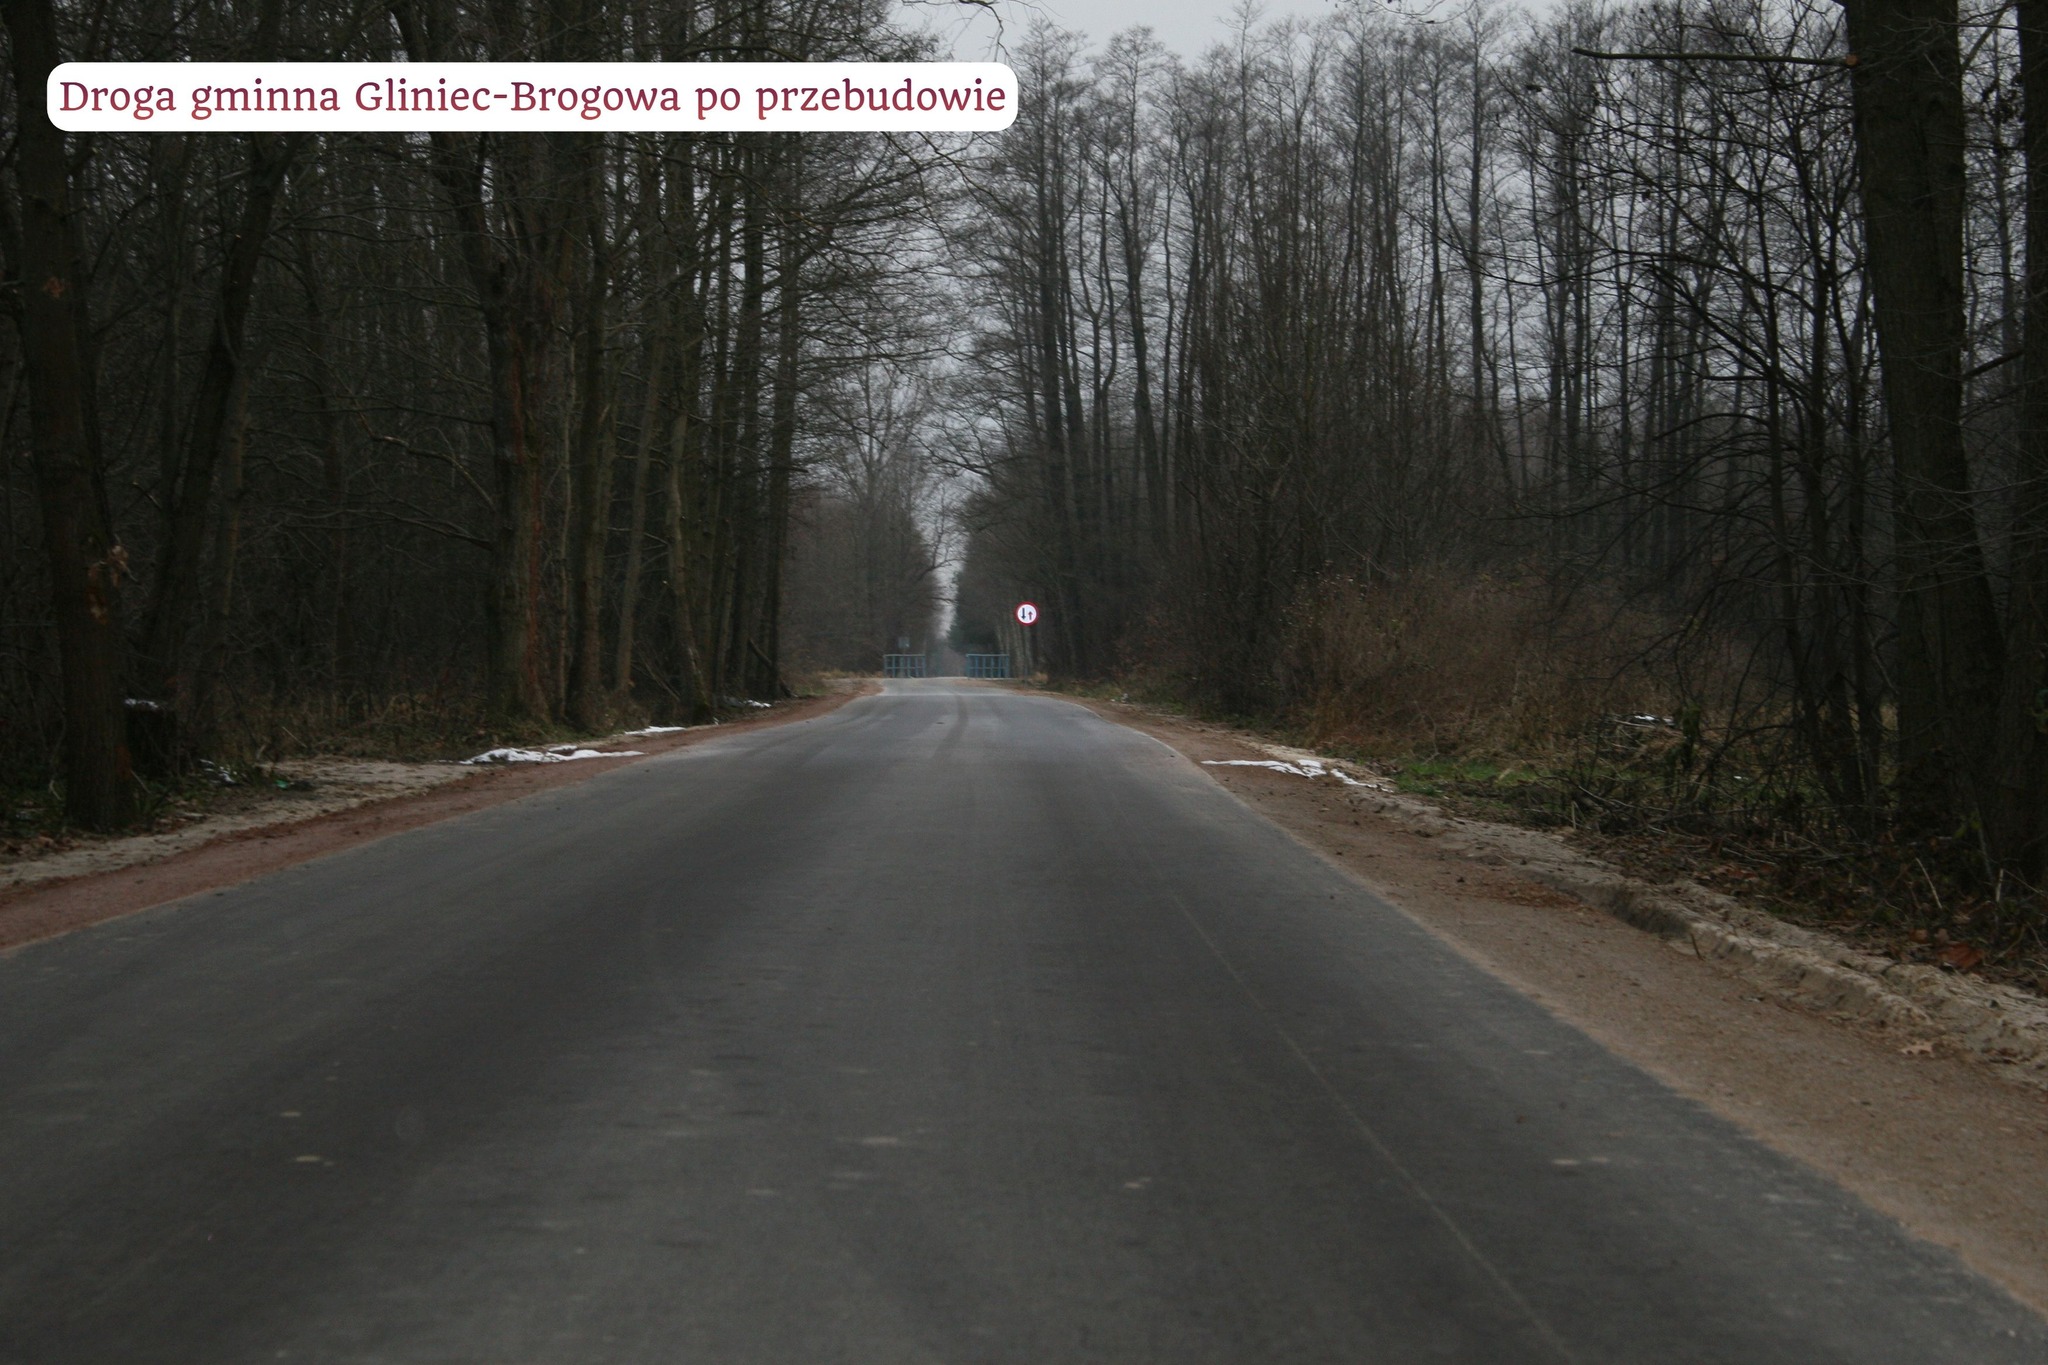 przebudowa drogi gminnej na odcinku Gliniec-Brogowa 